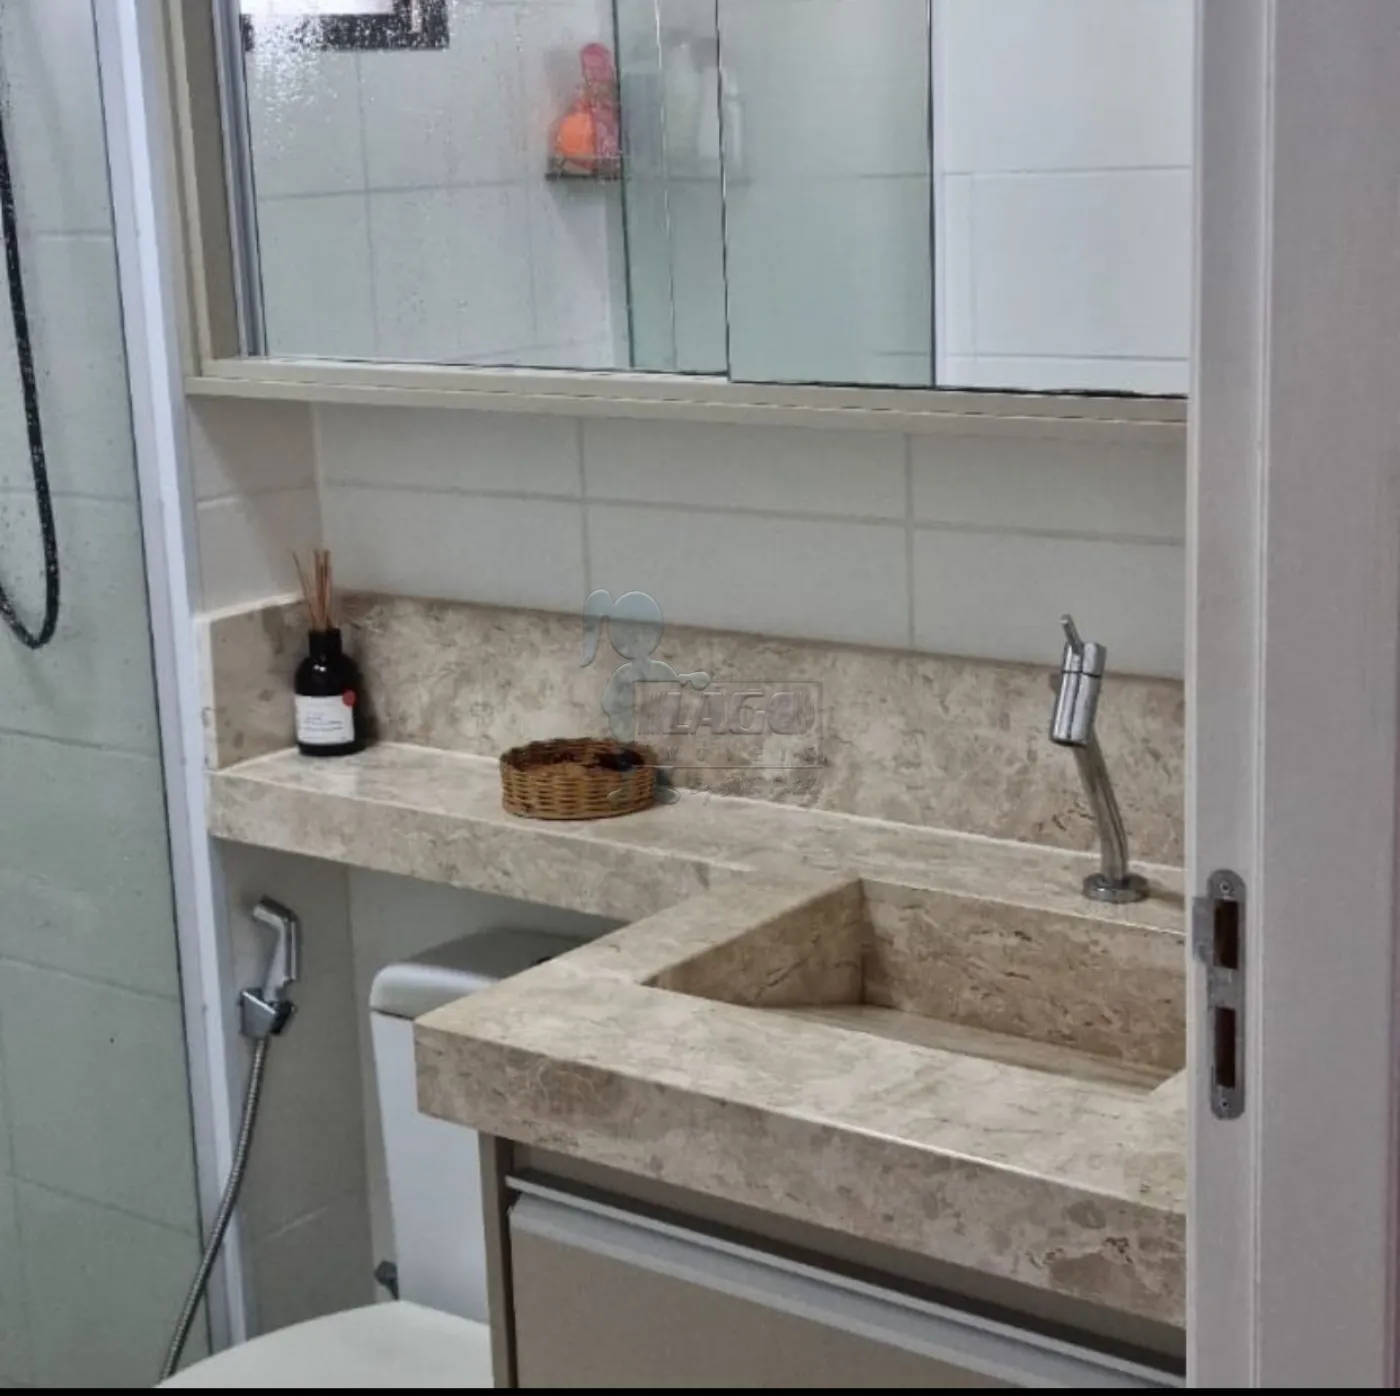 Comprar Apartamento / Padrão em Ribeirão Preto R$ 235.000,00 - Foto 8